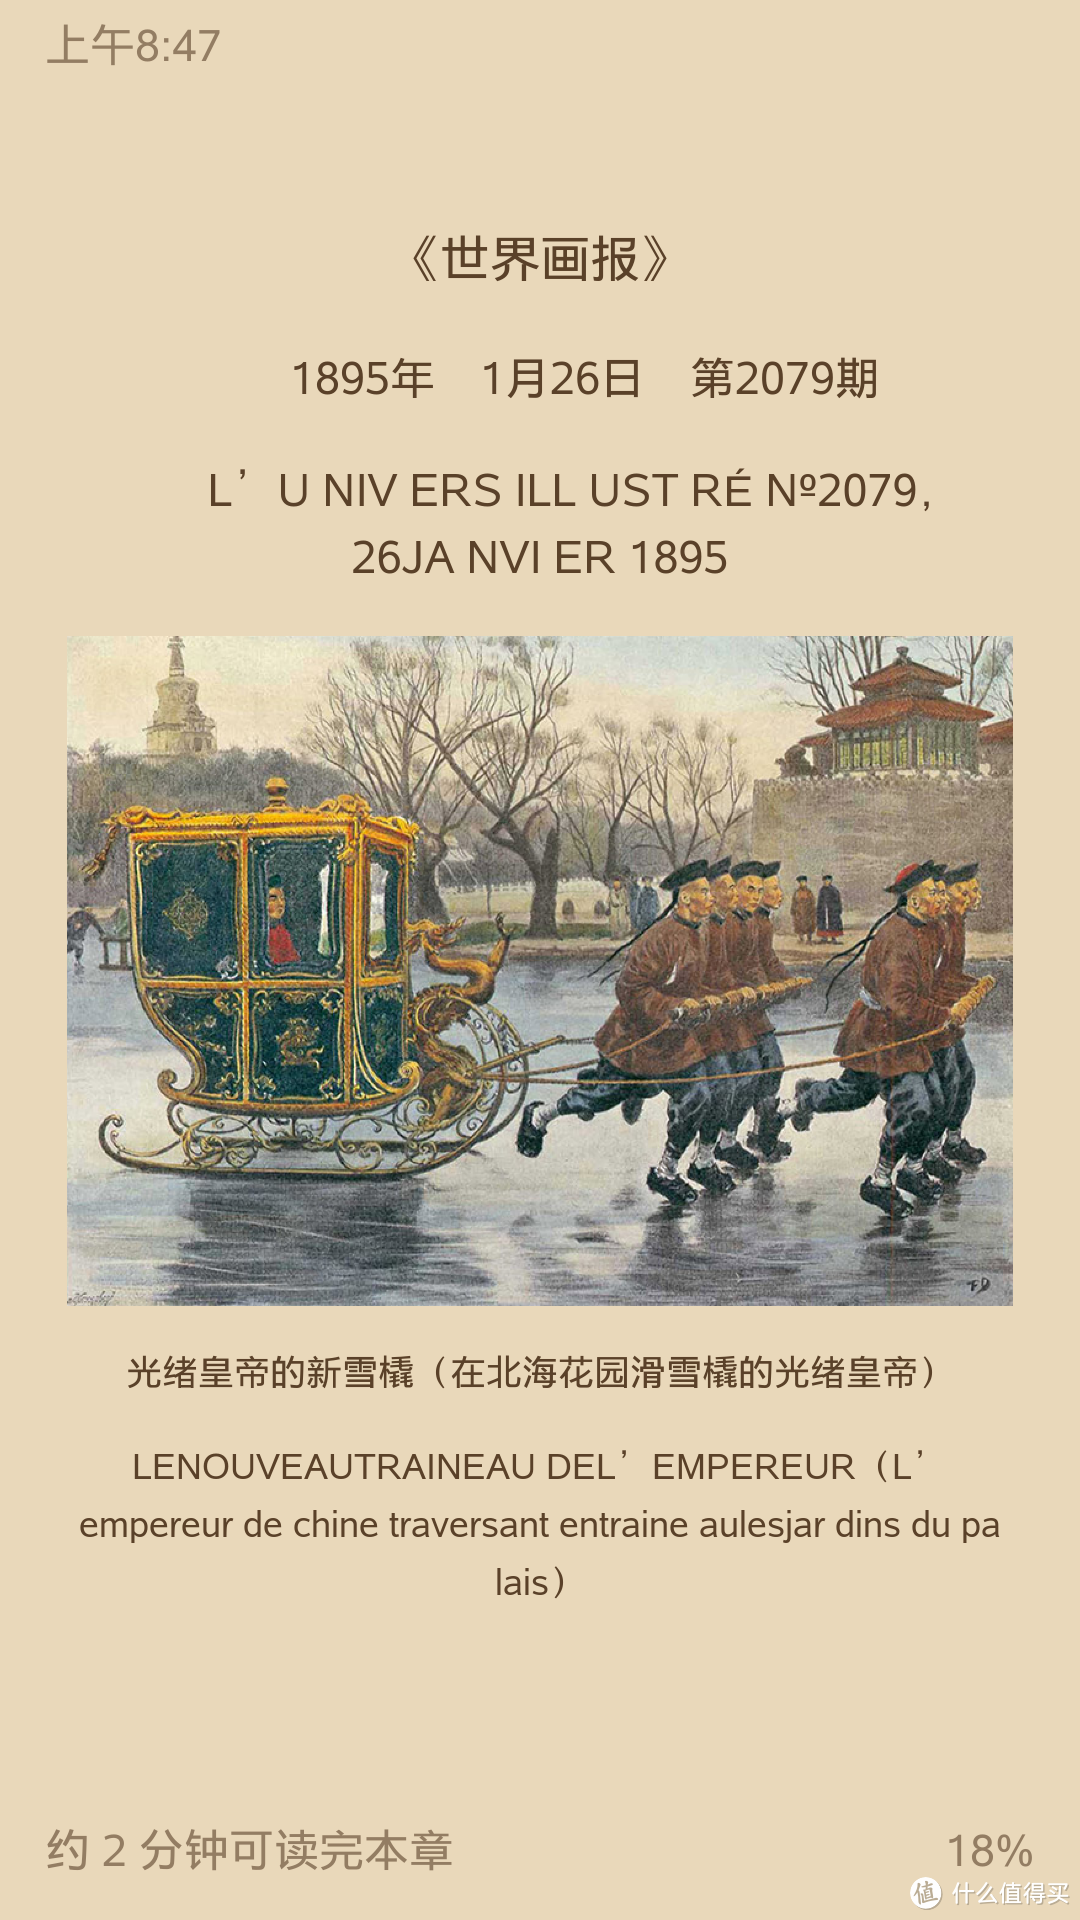 图书馆猿の2019读书计划59：《遗失在西方的中国史：法国彩色画报记录的中国1850——1937 》